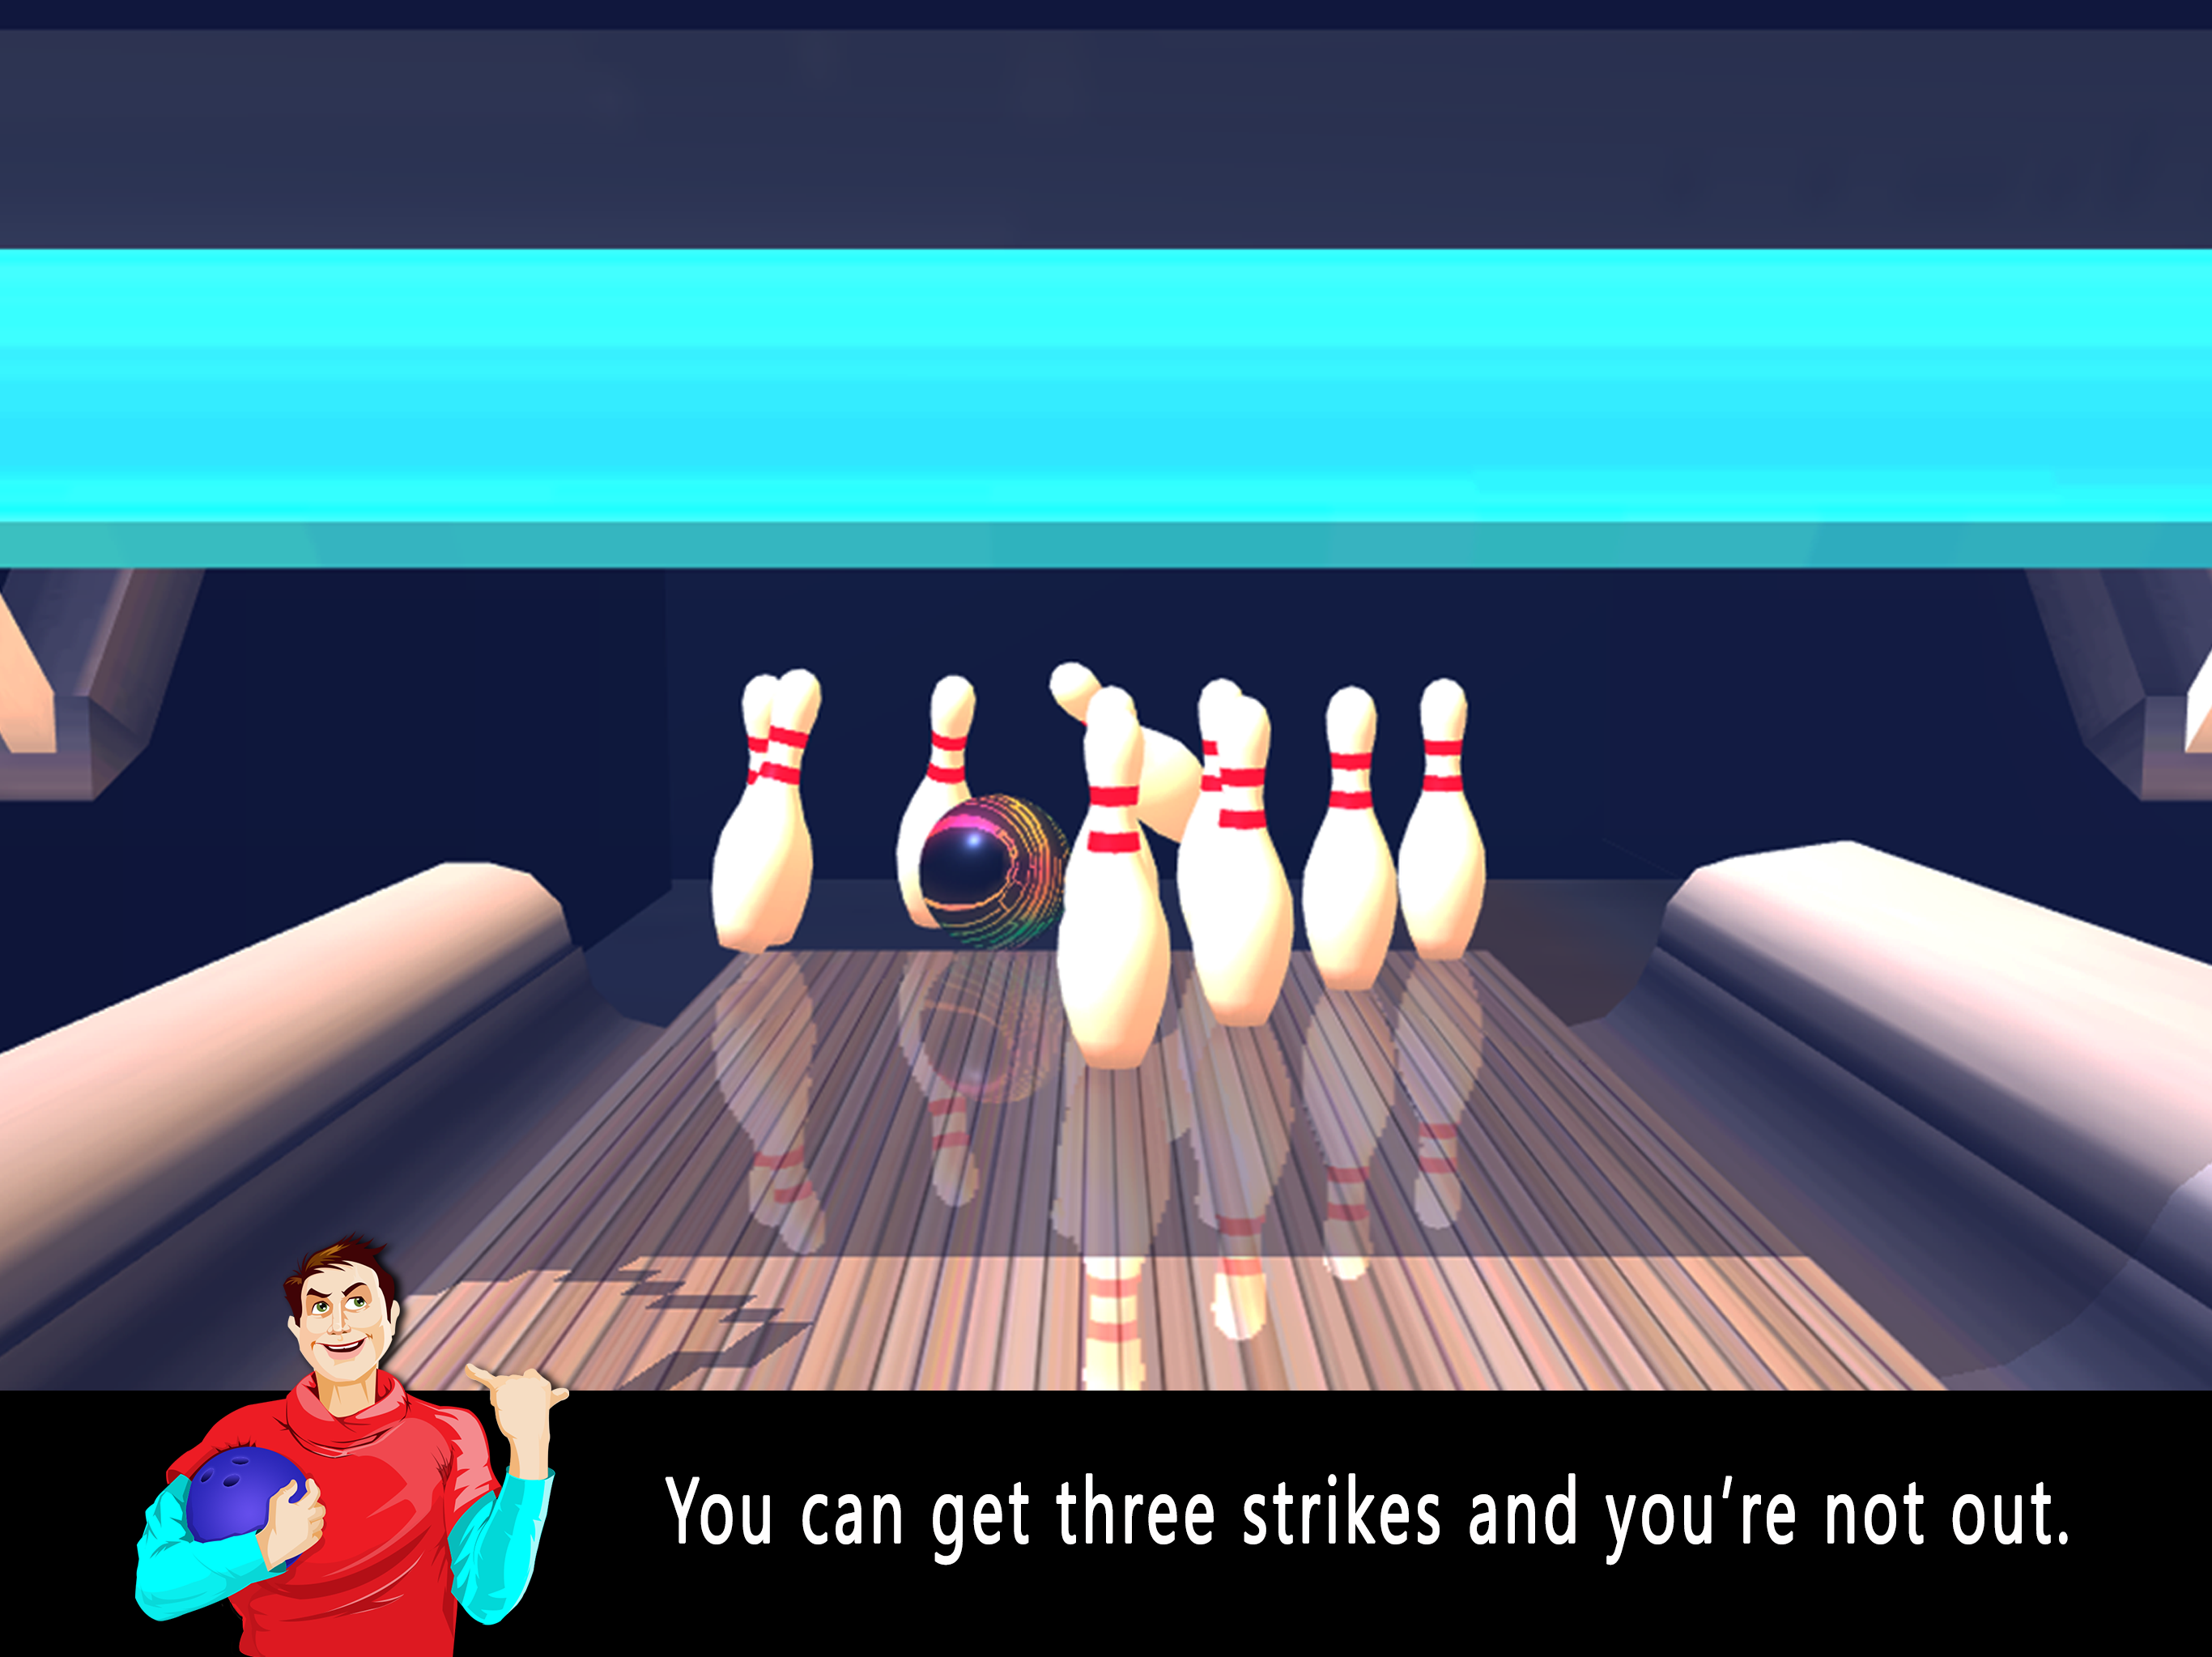 Bowling Nation 3D遊戲截圖